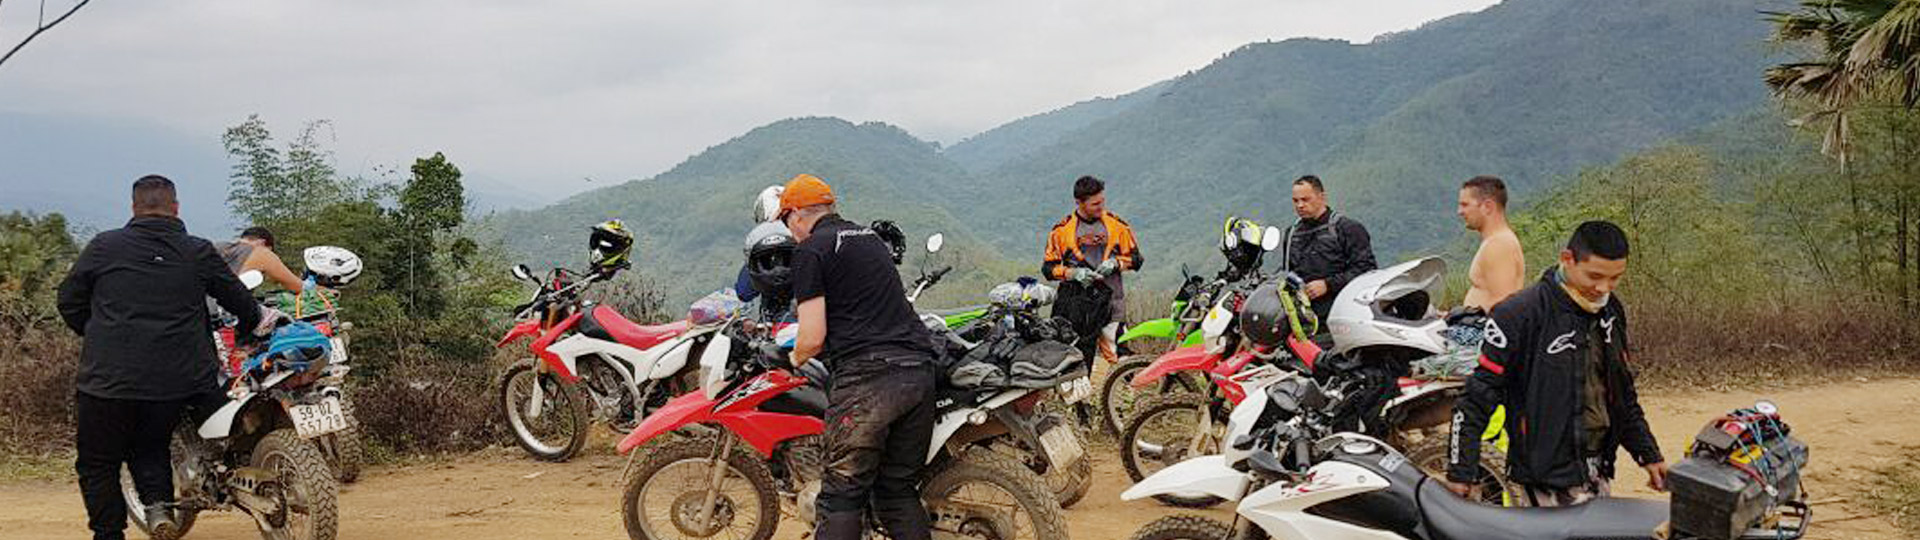 1 Day Luang Prabang Motorbike Tour and Waterfalls